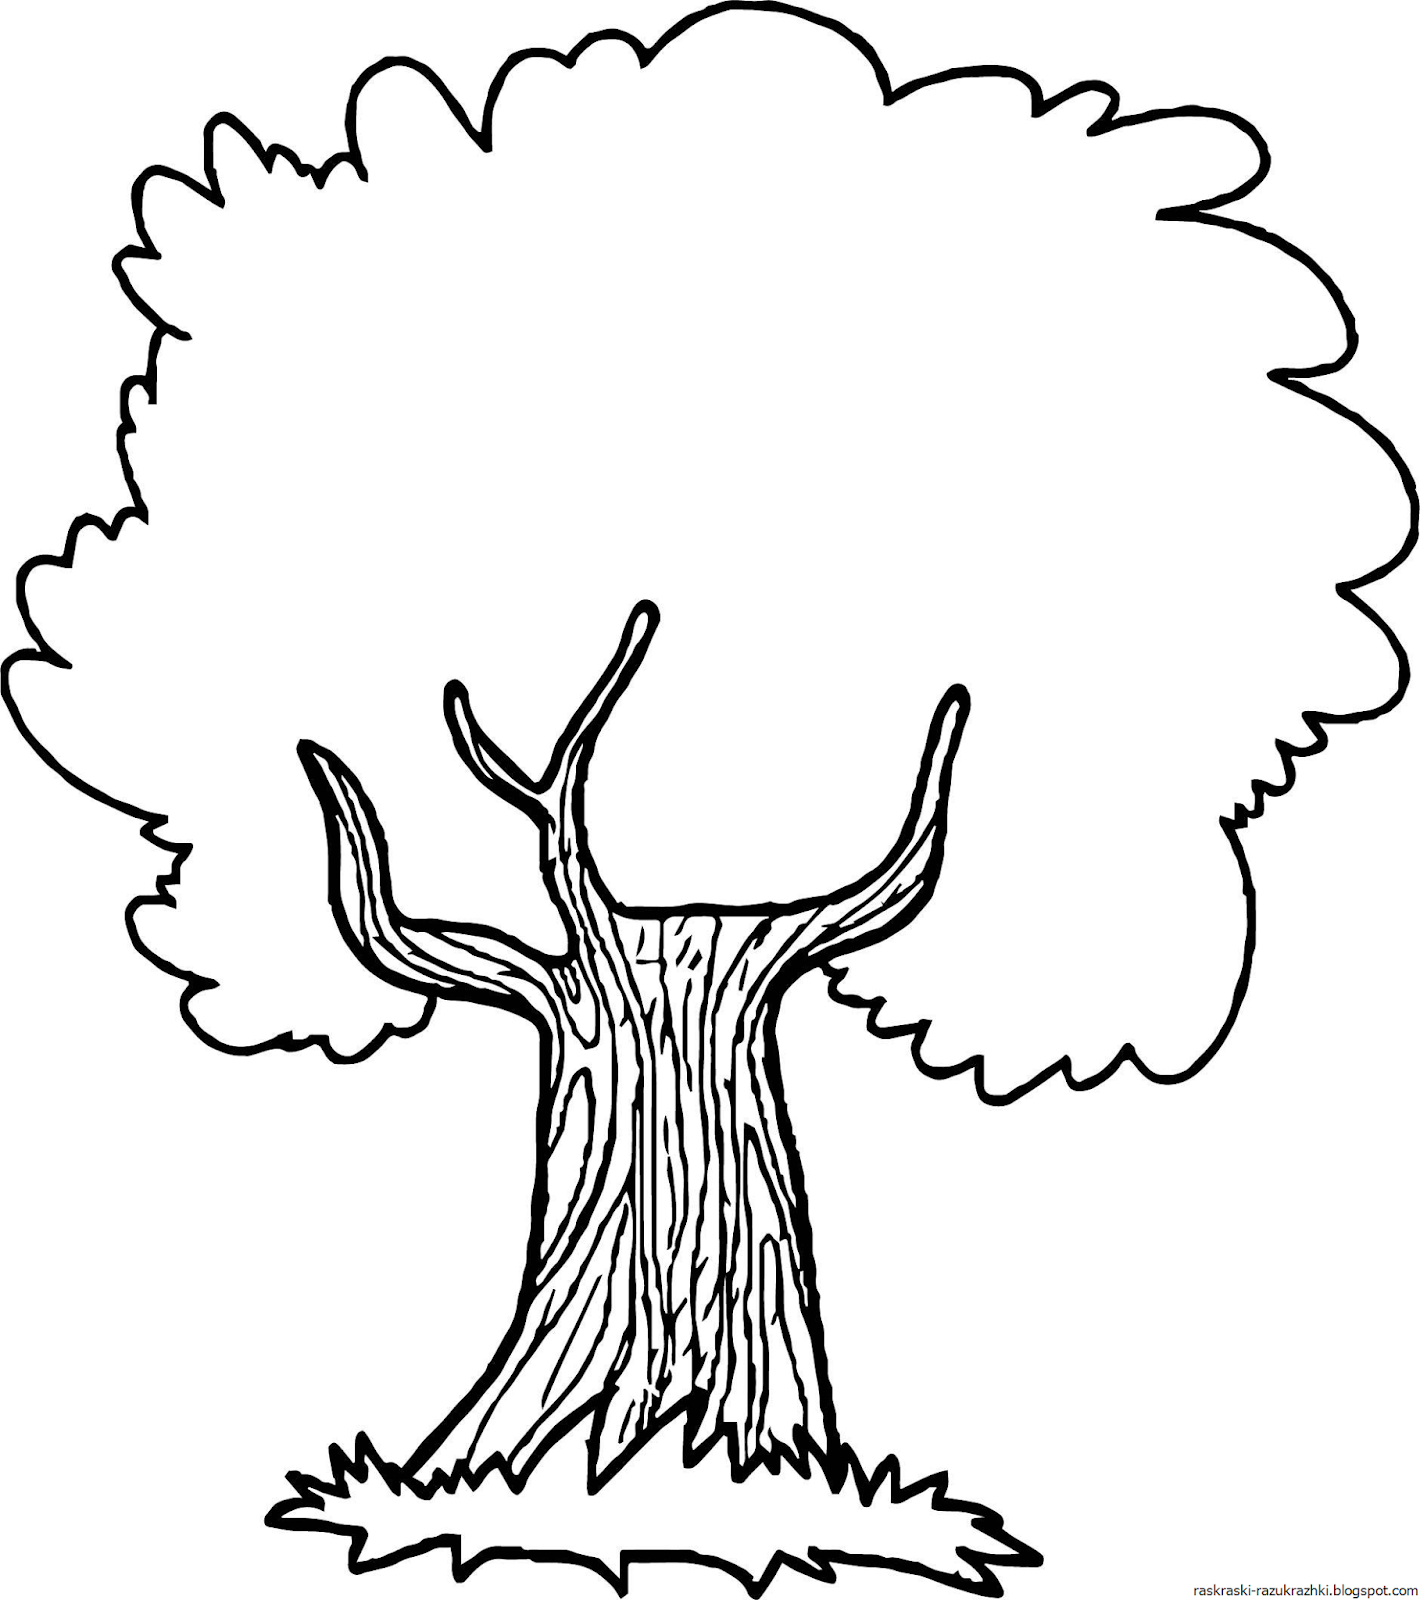 «Дерево дуб» бесплатная раскраска для детей - мальчиков и девочек